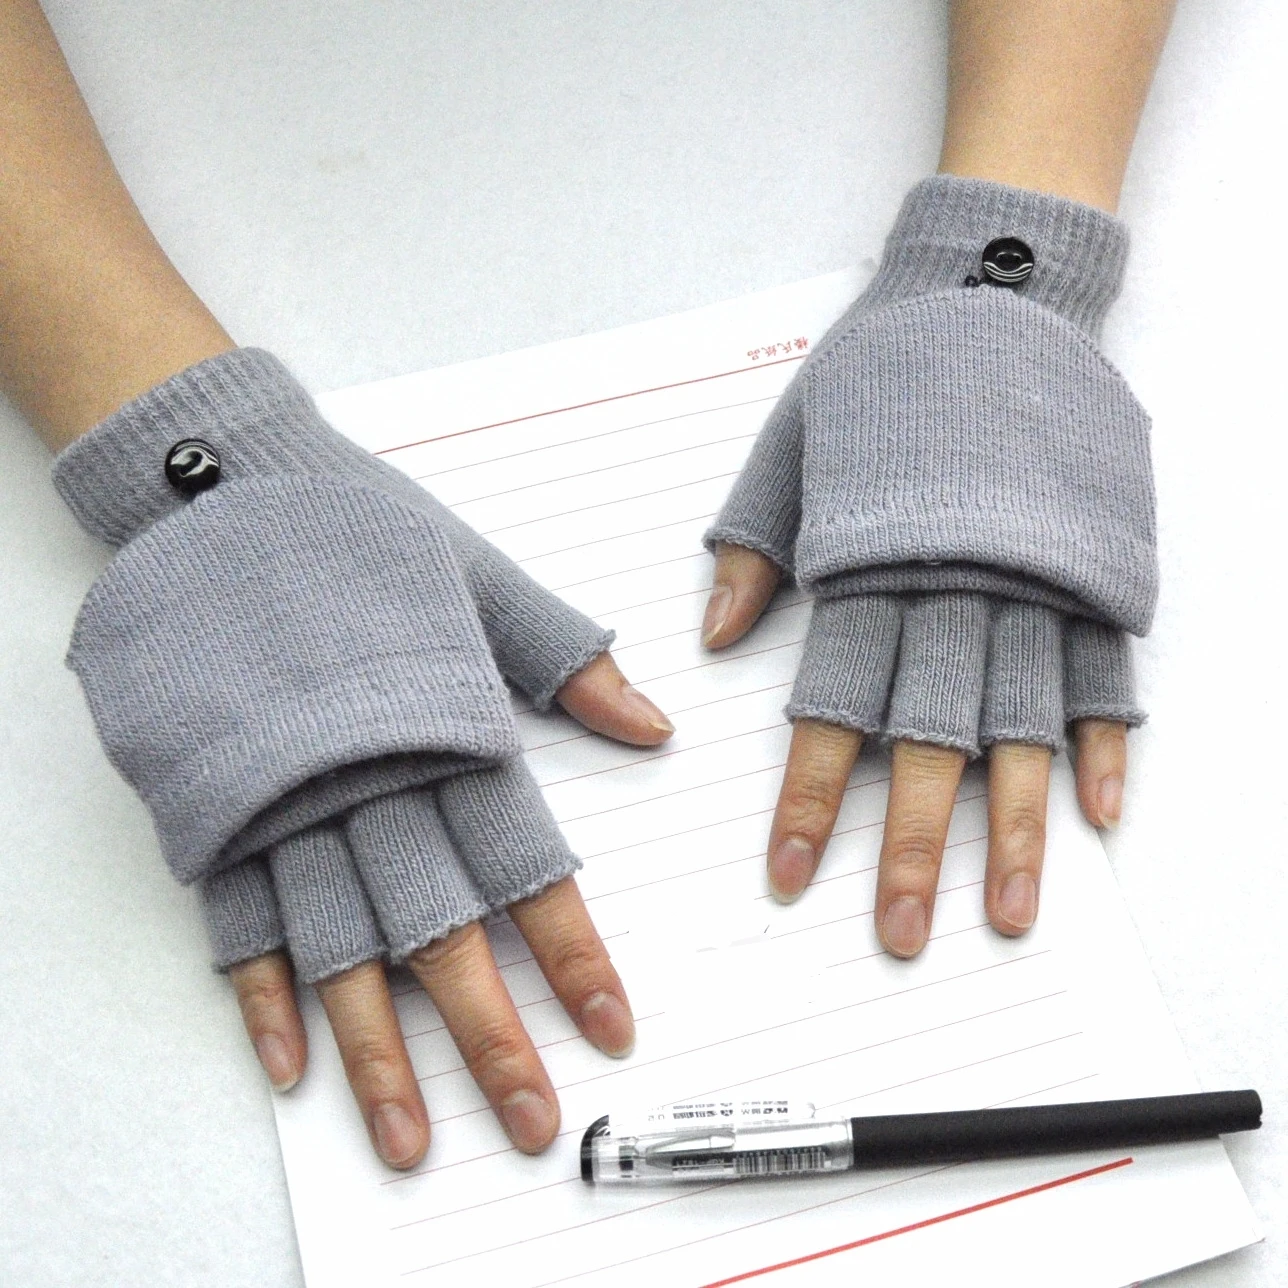 Fingerless Flip Gloves Winter Warm Soft Comfortable Wool Knitted Glove Touchscreen for Women Men Exposed Finger Mittens Gloves & cotton gloves for men